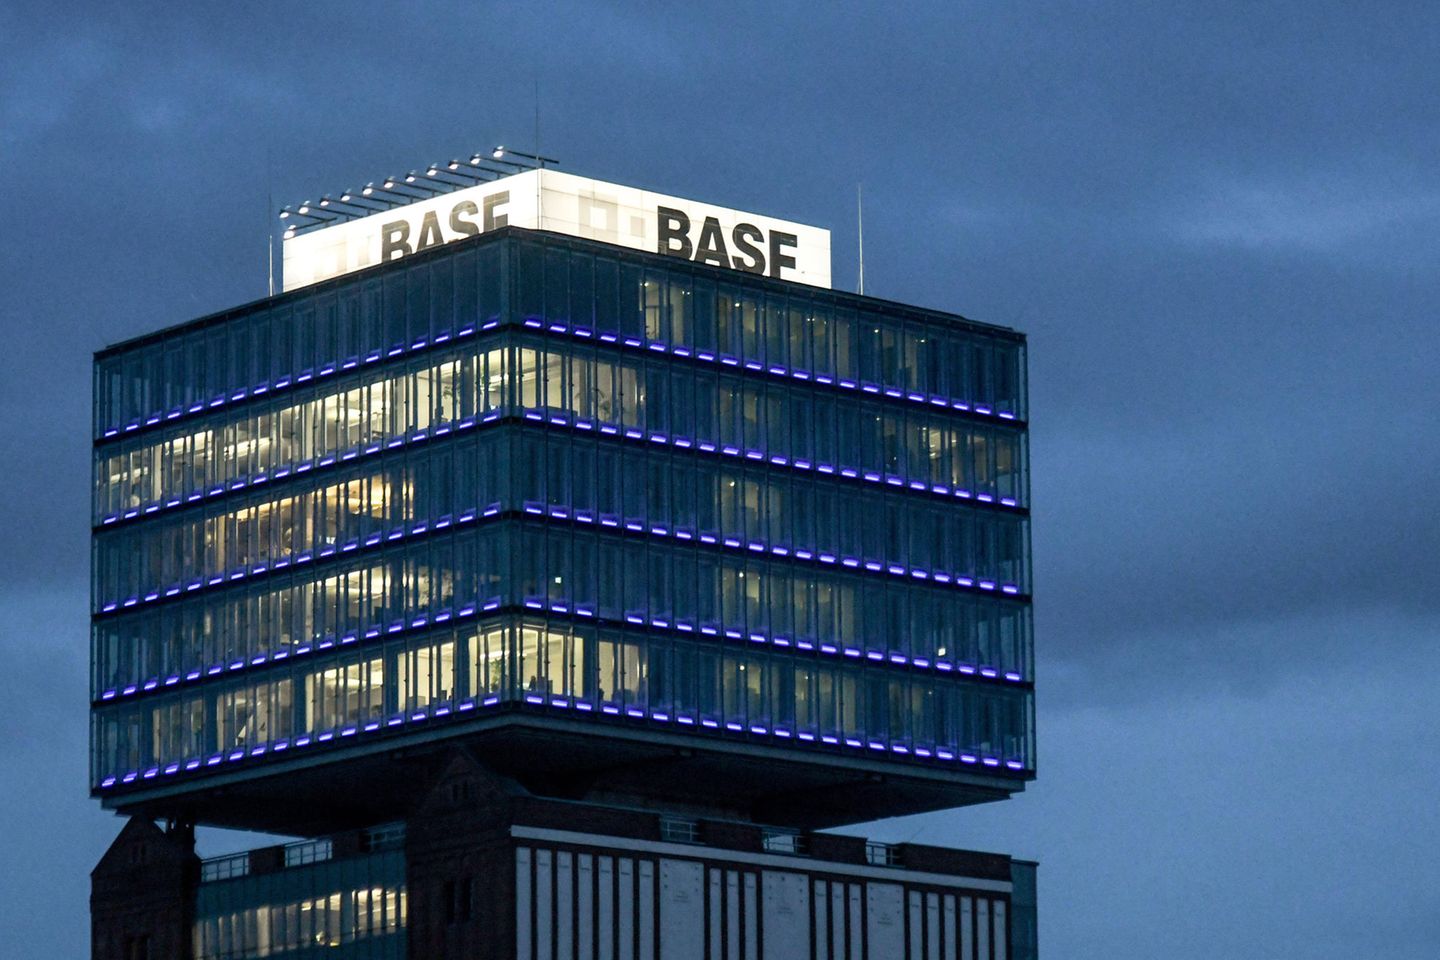 Der Chemiekonzern BASF gehört zu den Top 10 der umsatzstärksten deutschen Unternehmen